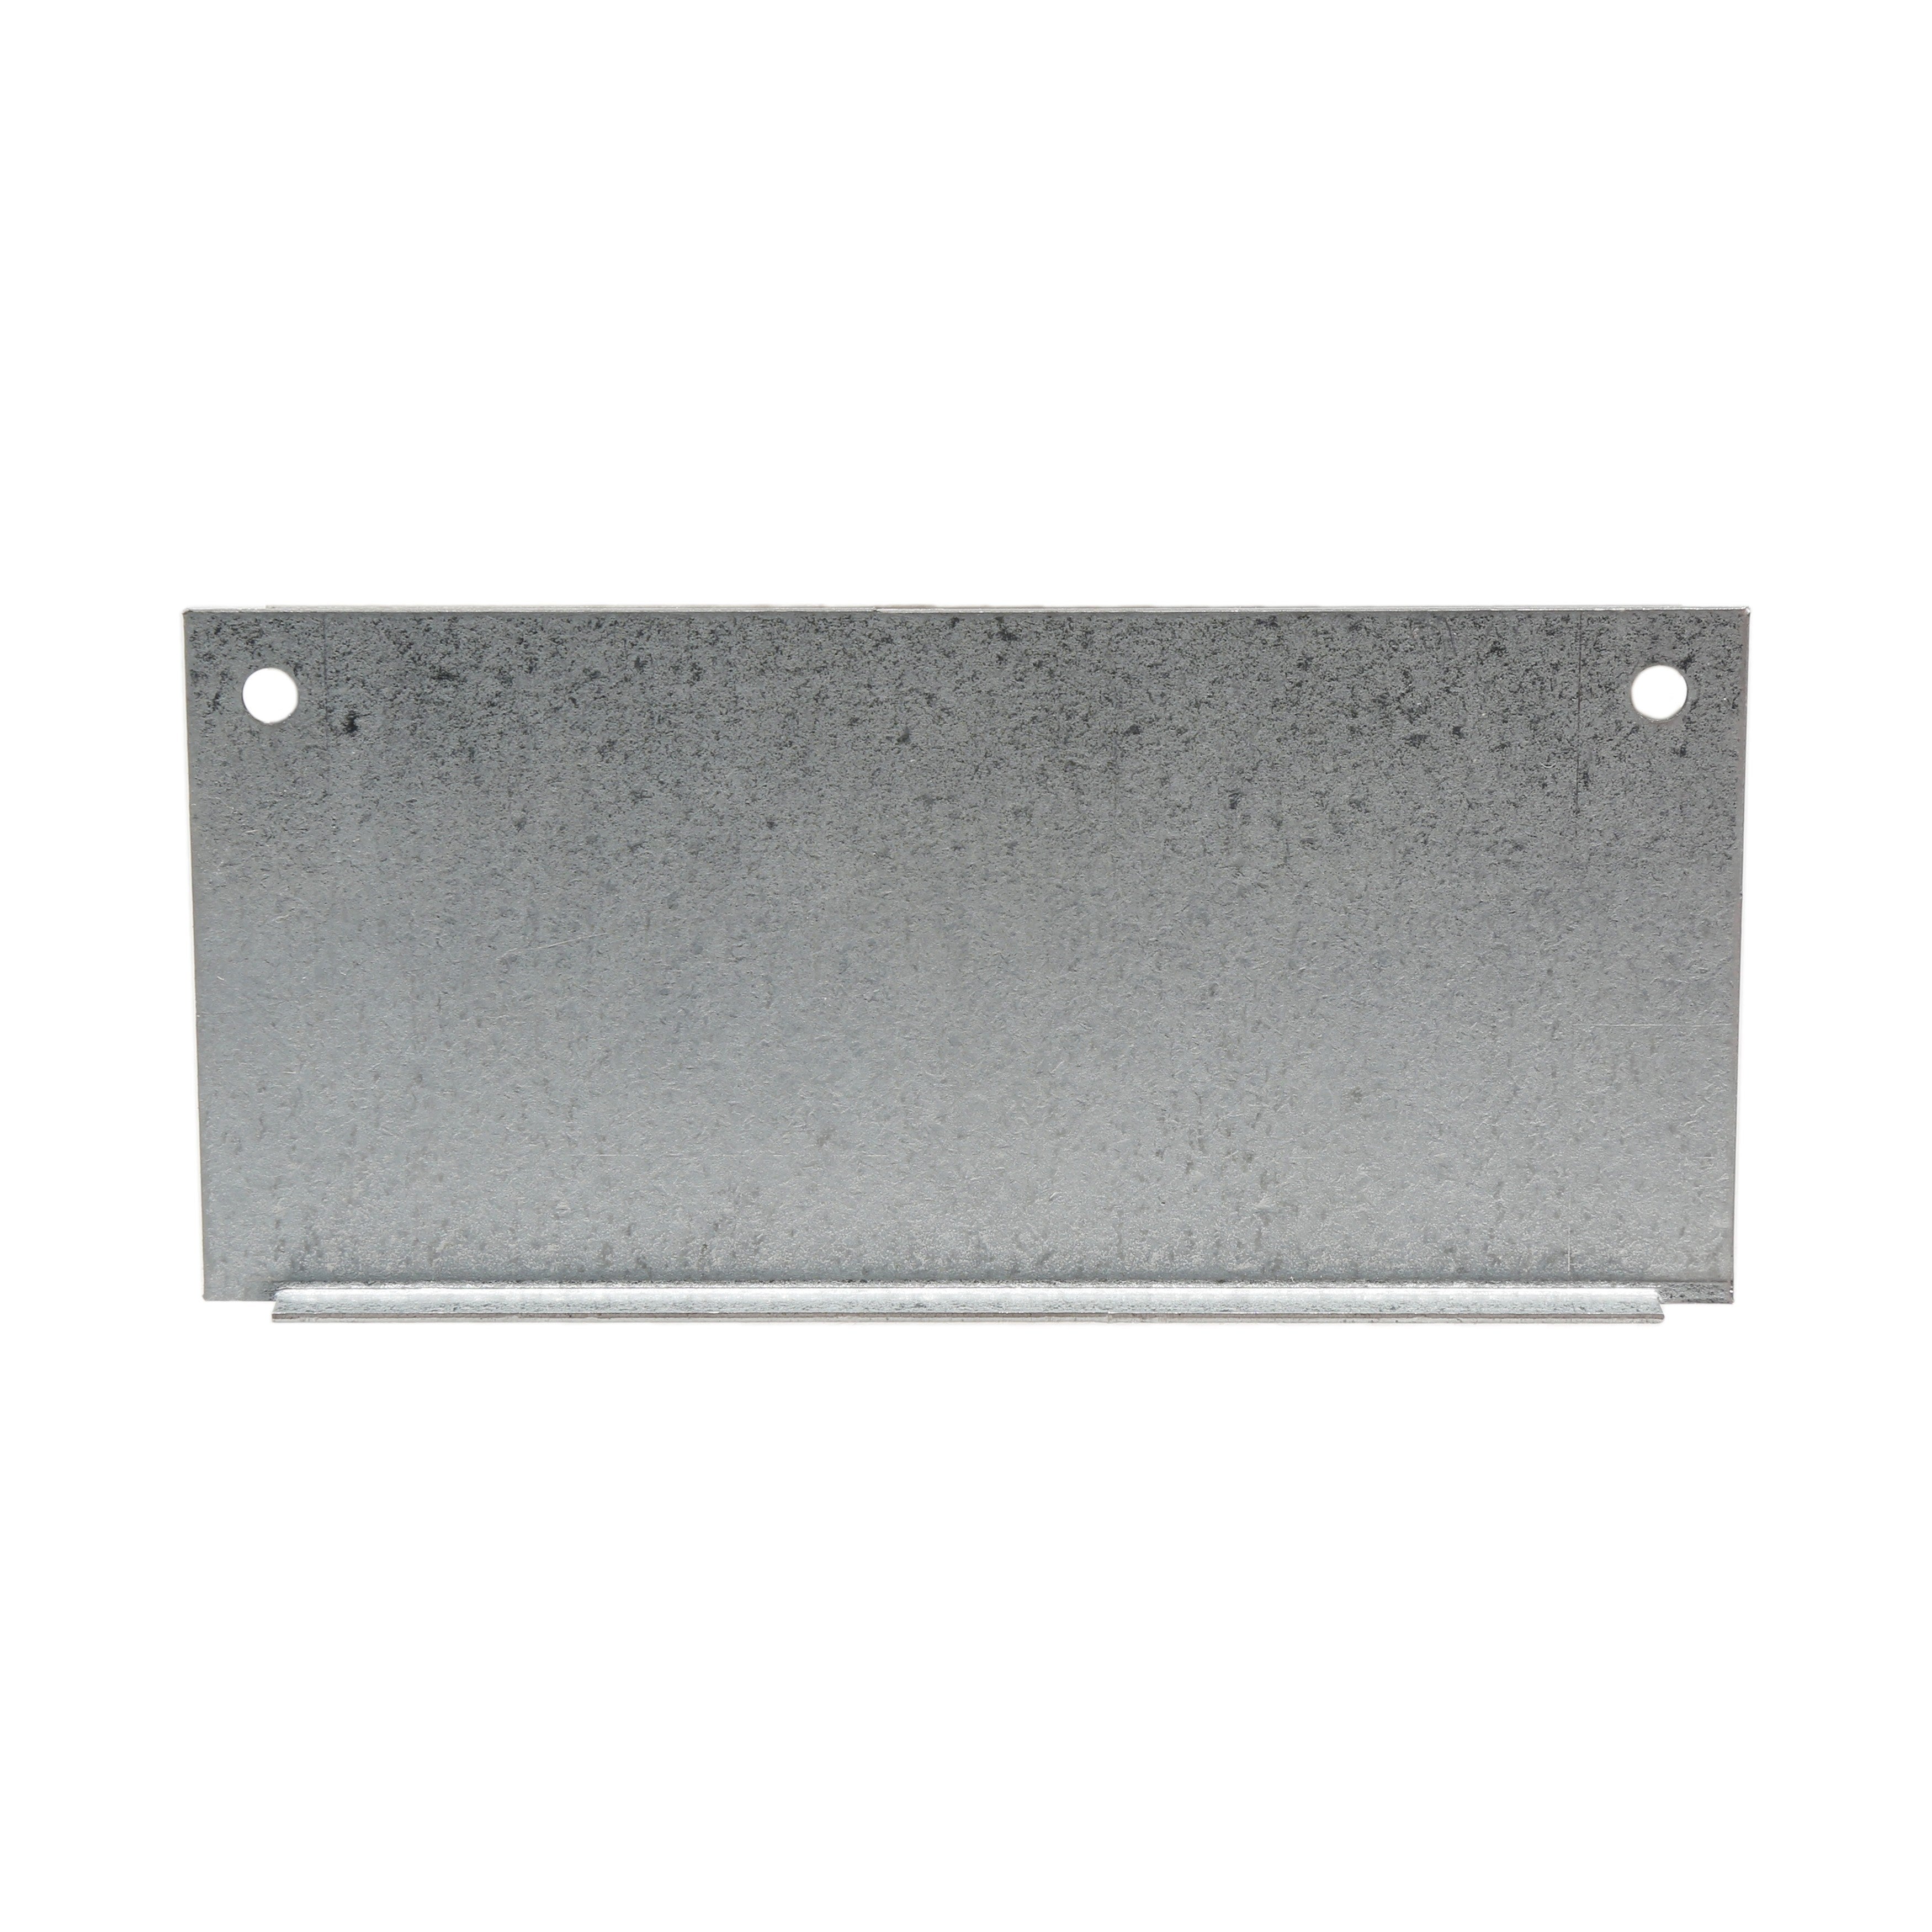 Linear 2100-261 Limit Box Detent Plate